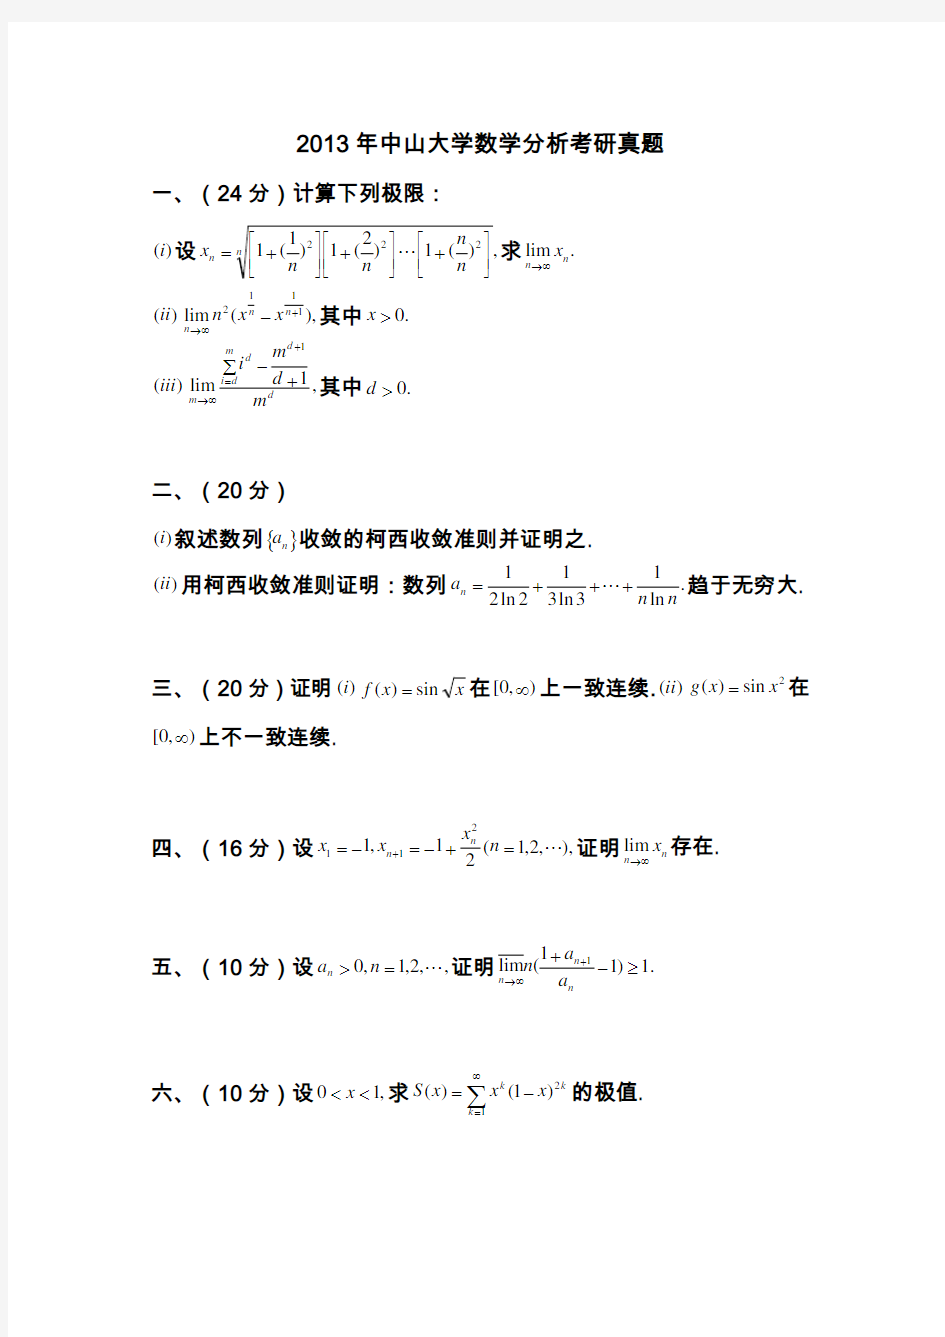 中山大学数学分析高等代数考研试题集锦(2004-2013年)